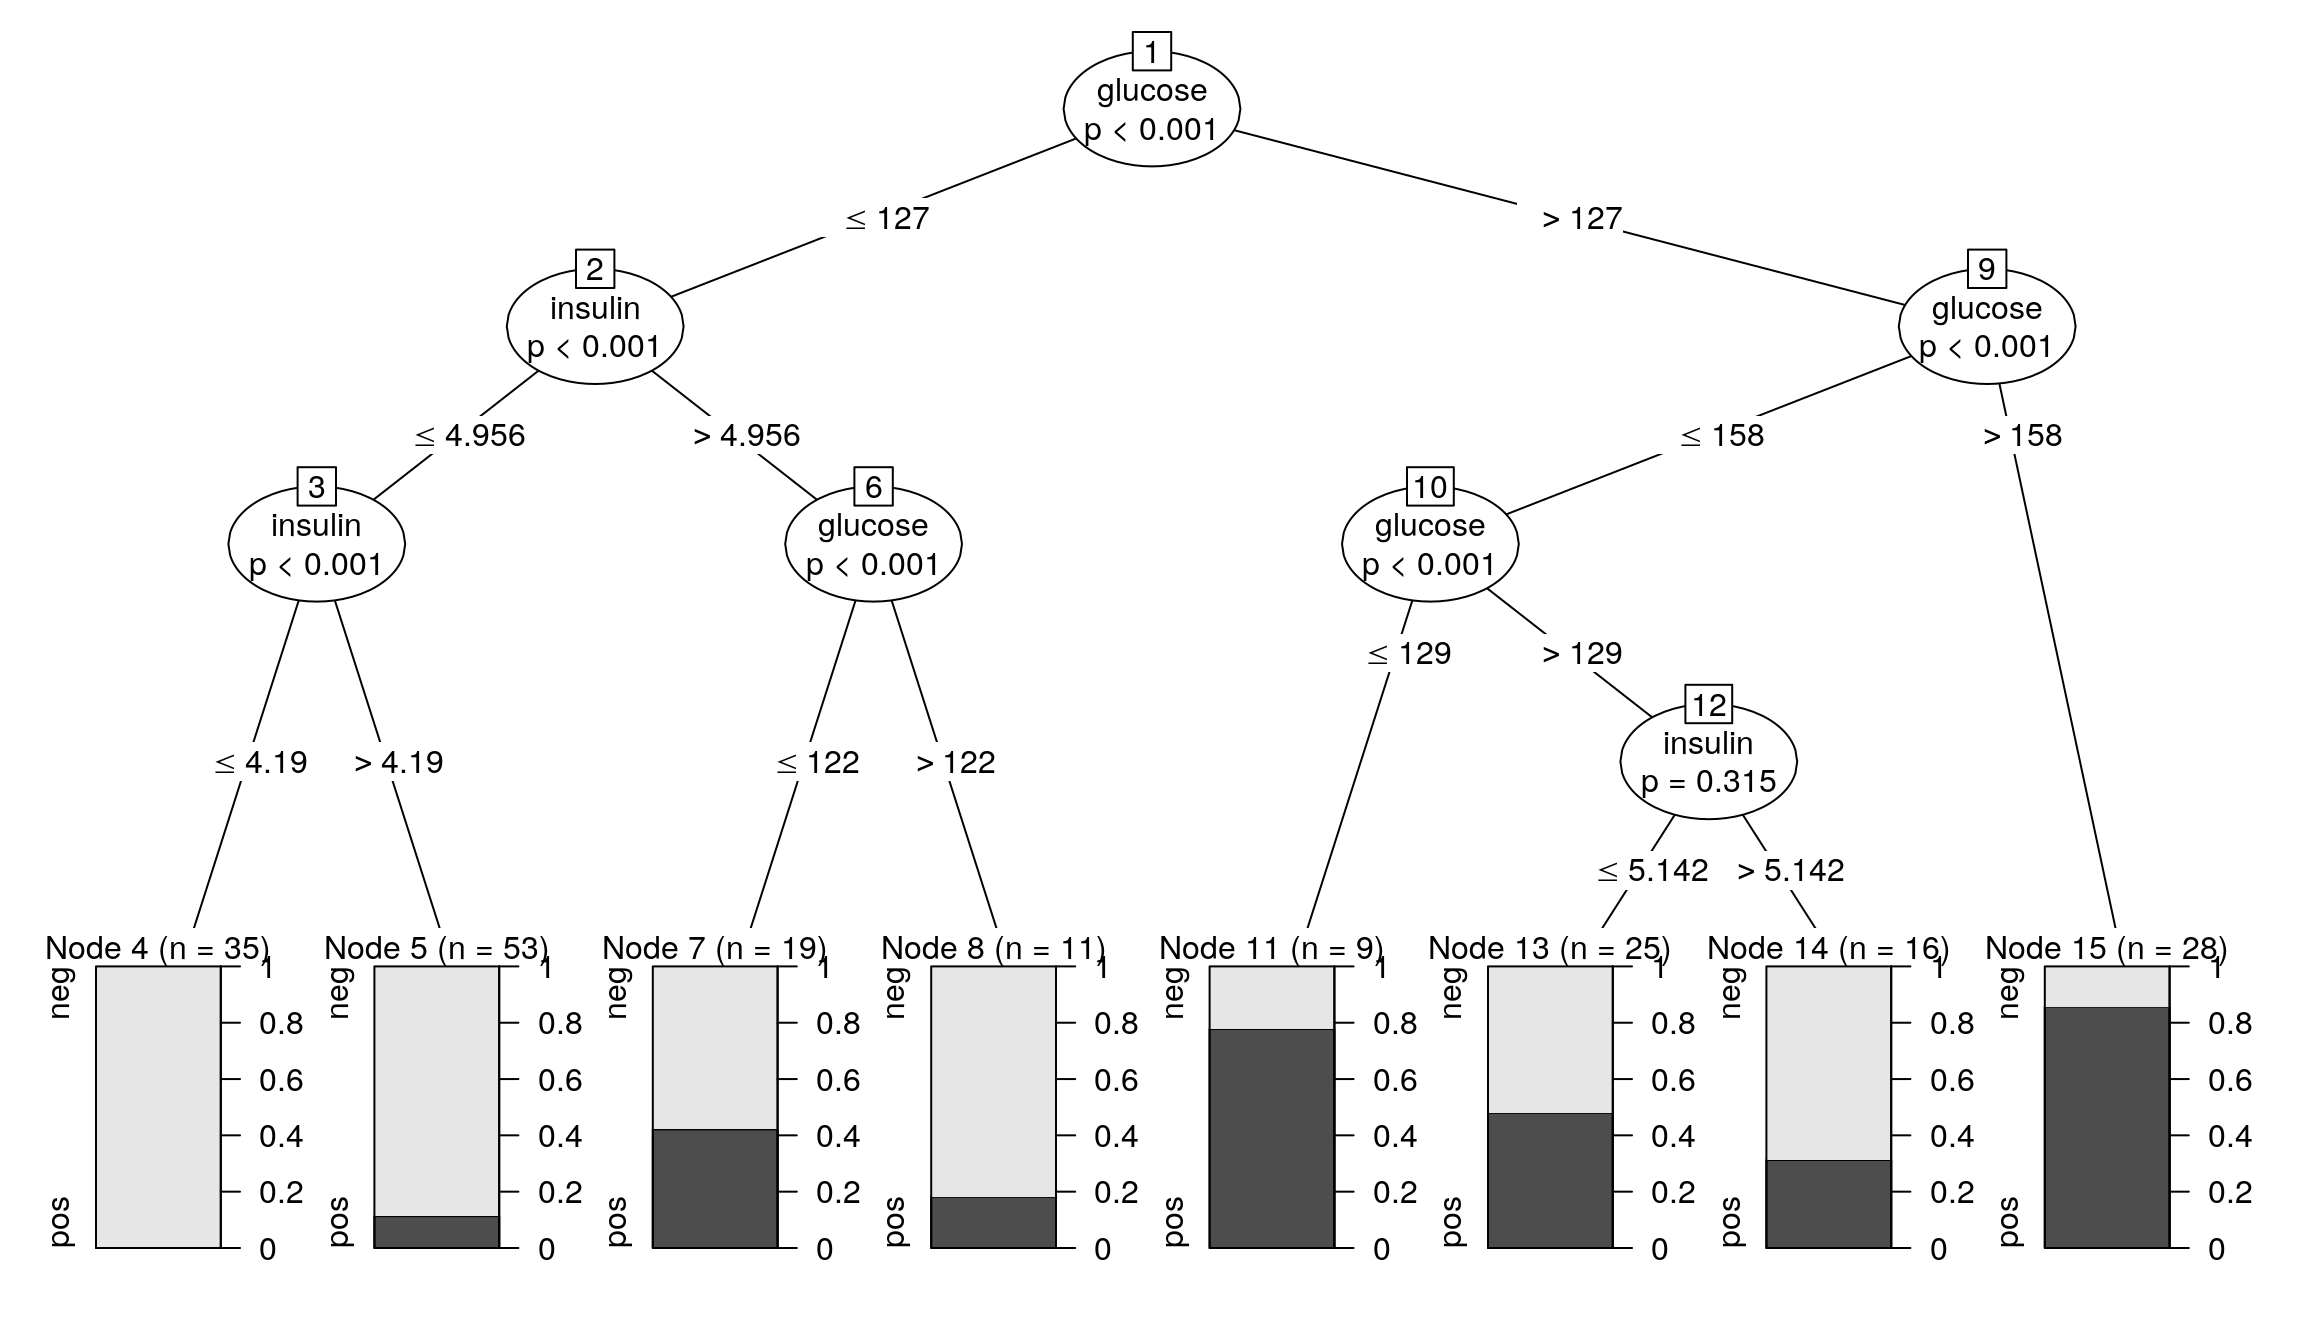 Przykładowe drzewo klasyfikacyjne wyznaczone funkcją ctree().